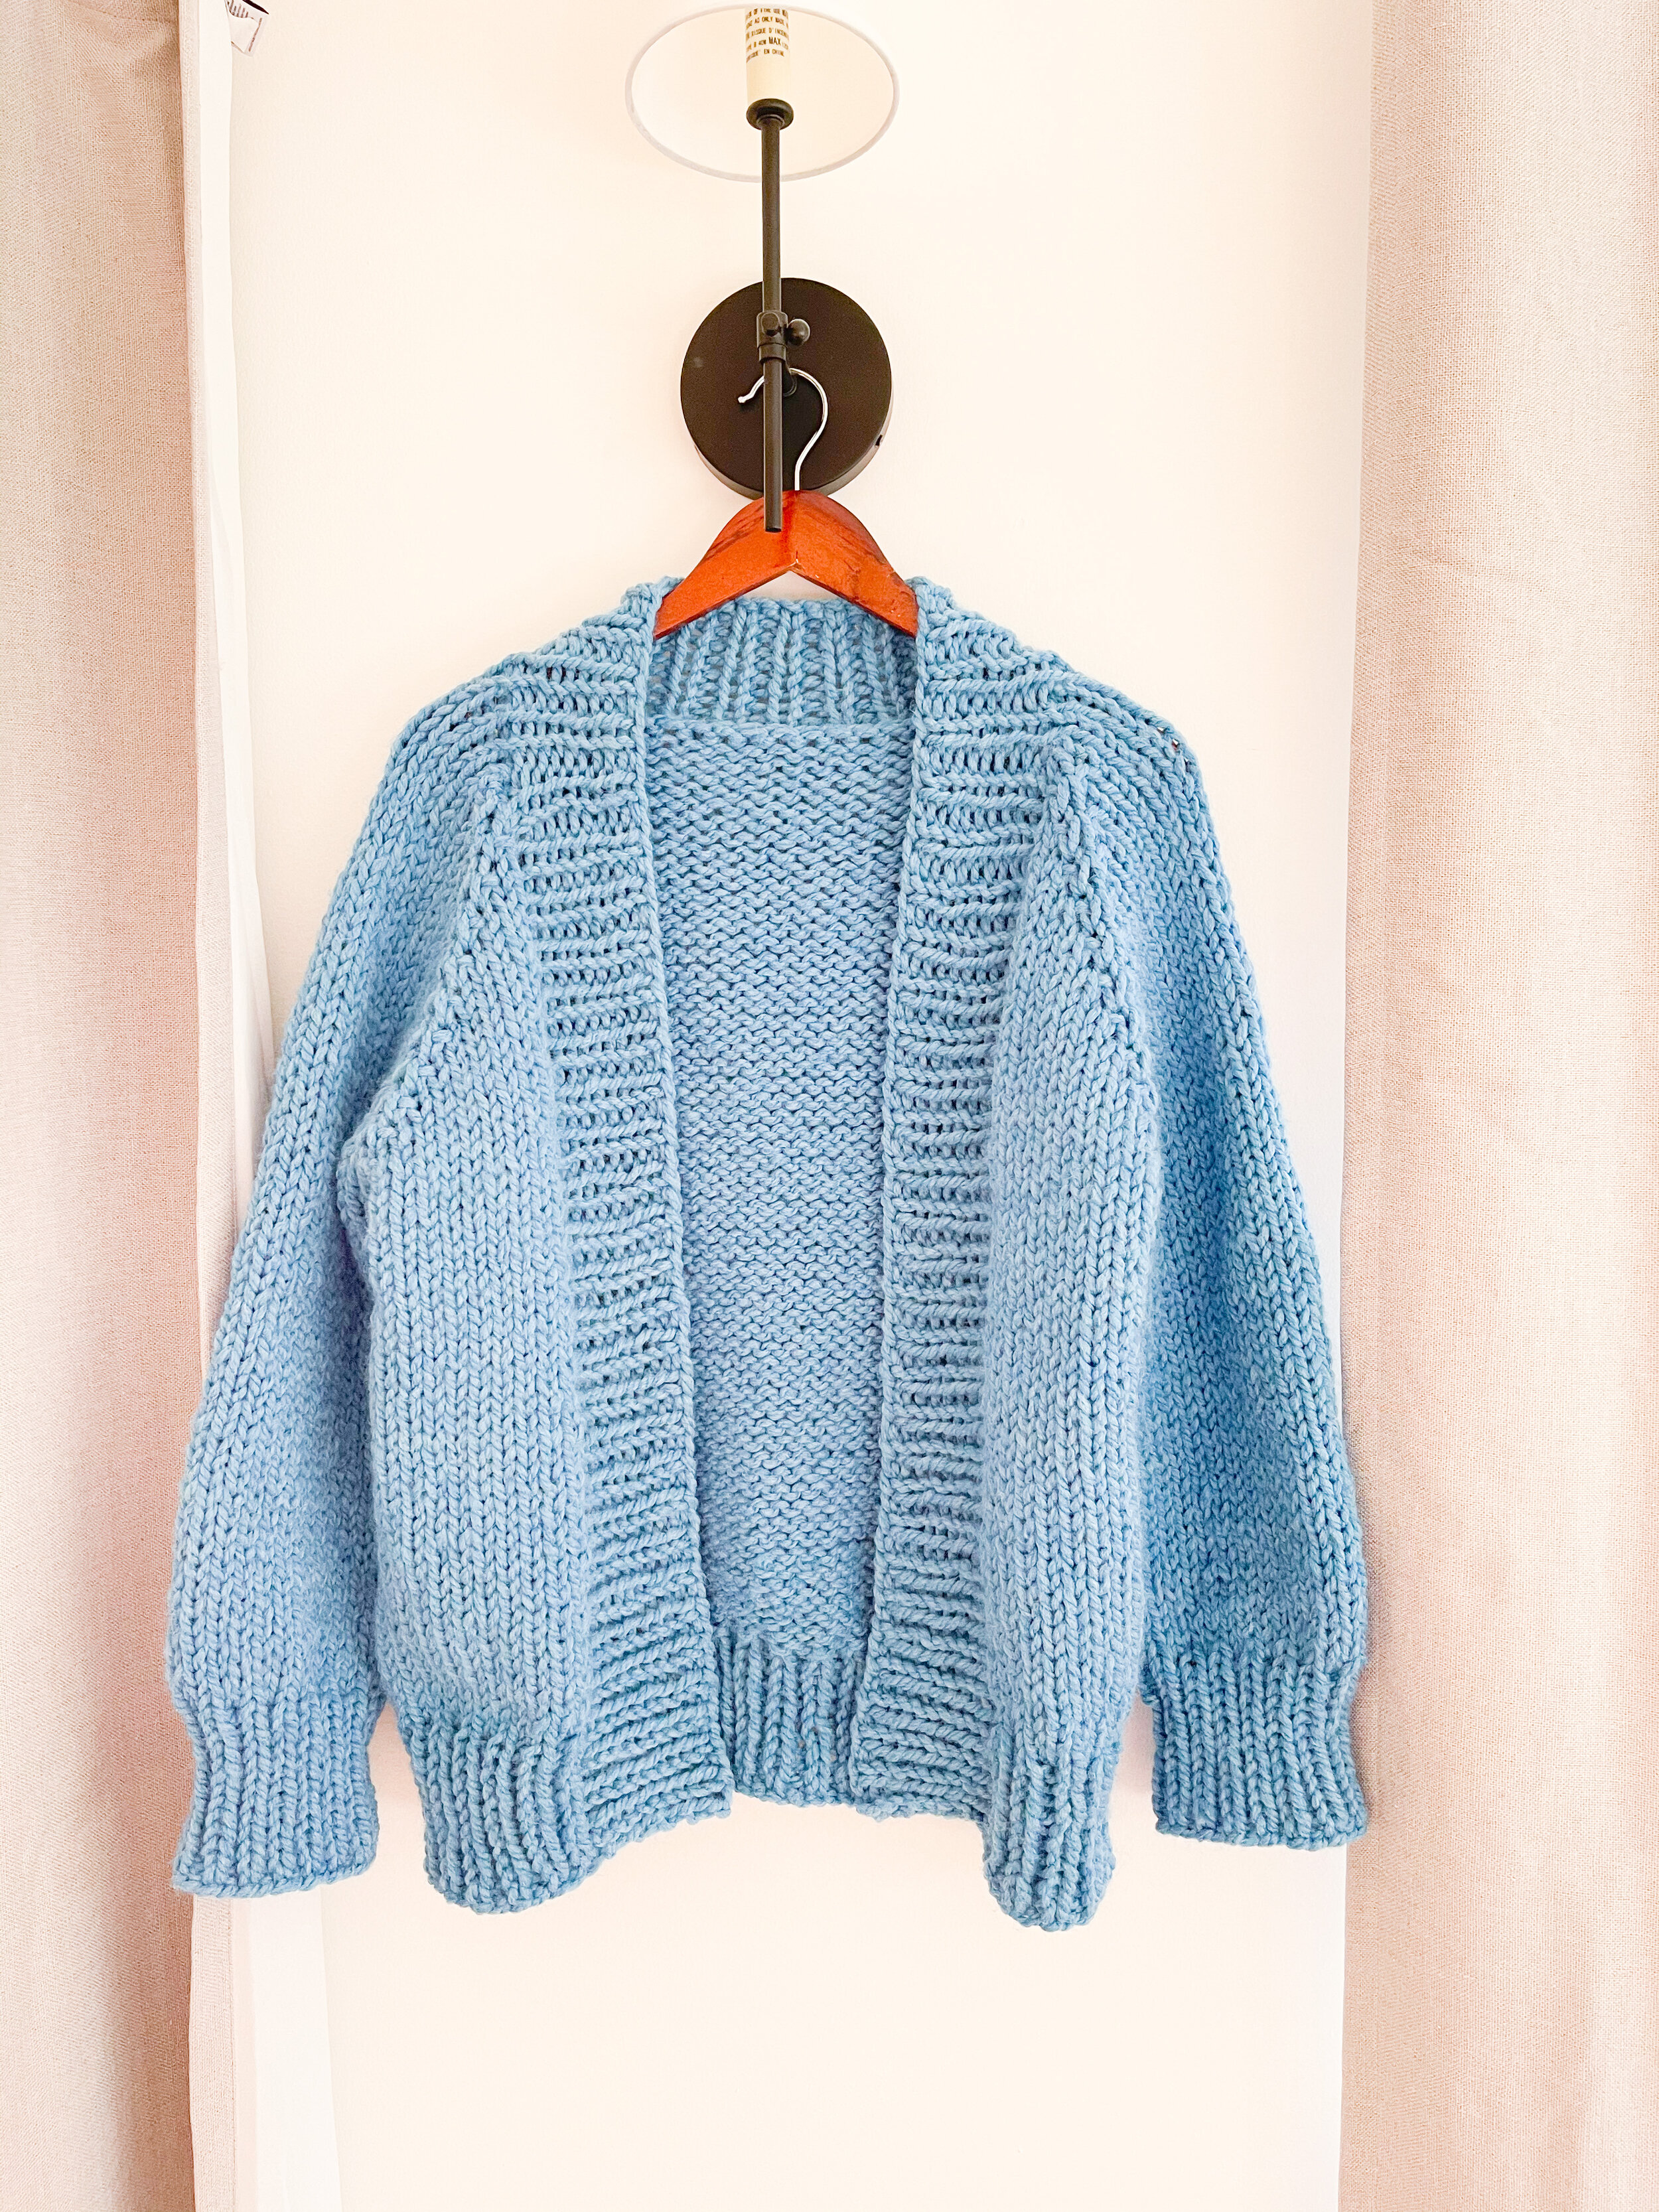 Umeki Smelte vinden er stærk How to Knit a Simple Cardigan Sweater Step by Step — Ashley Lillis